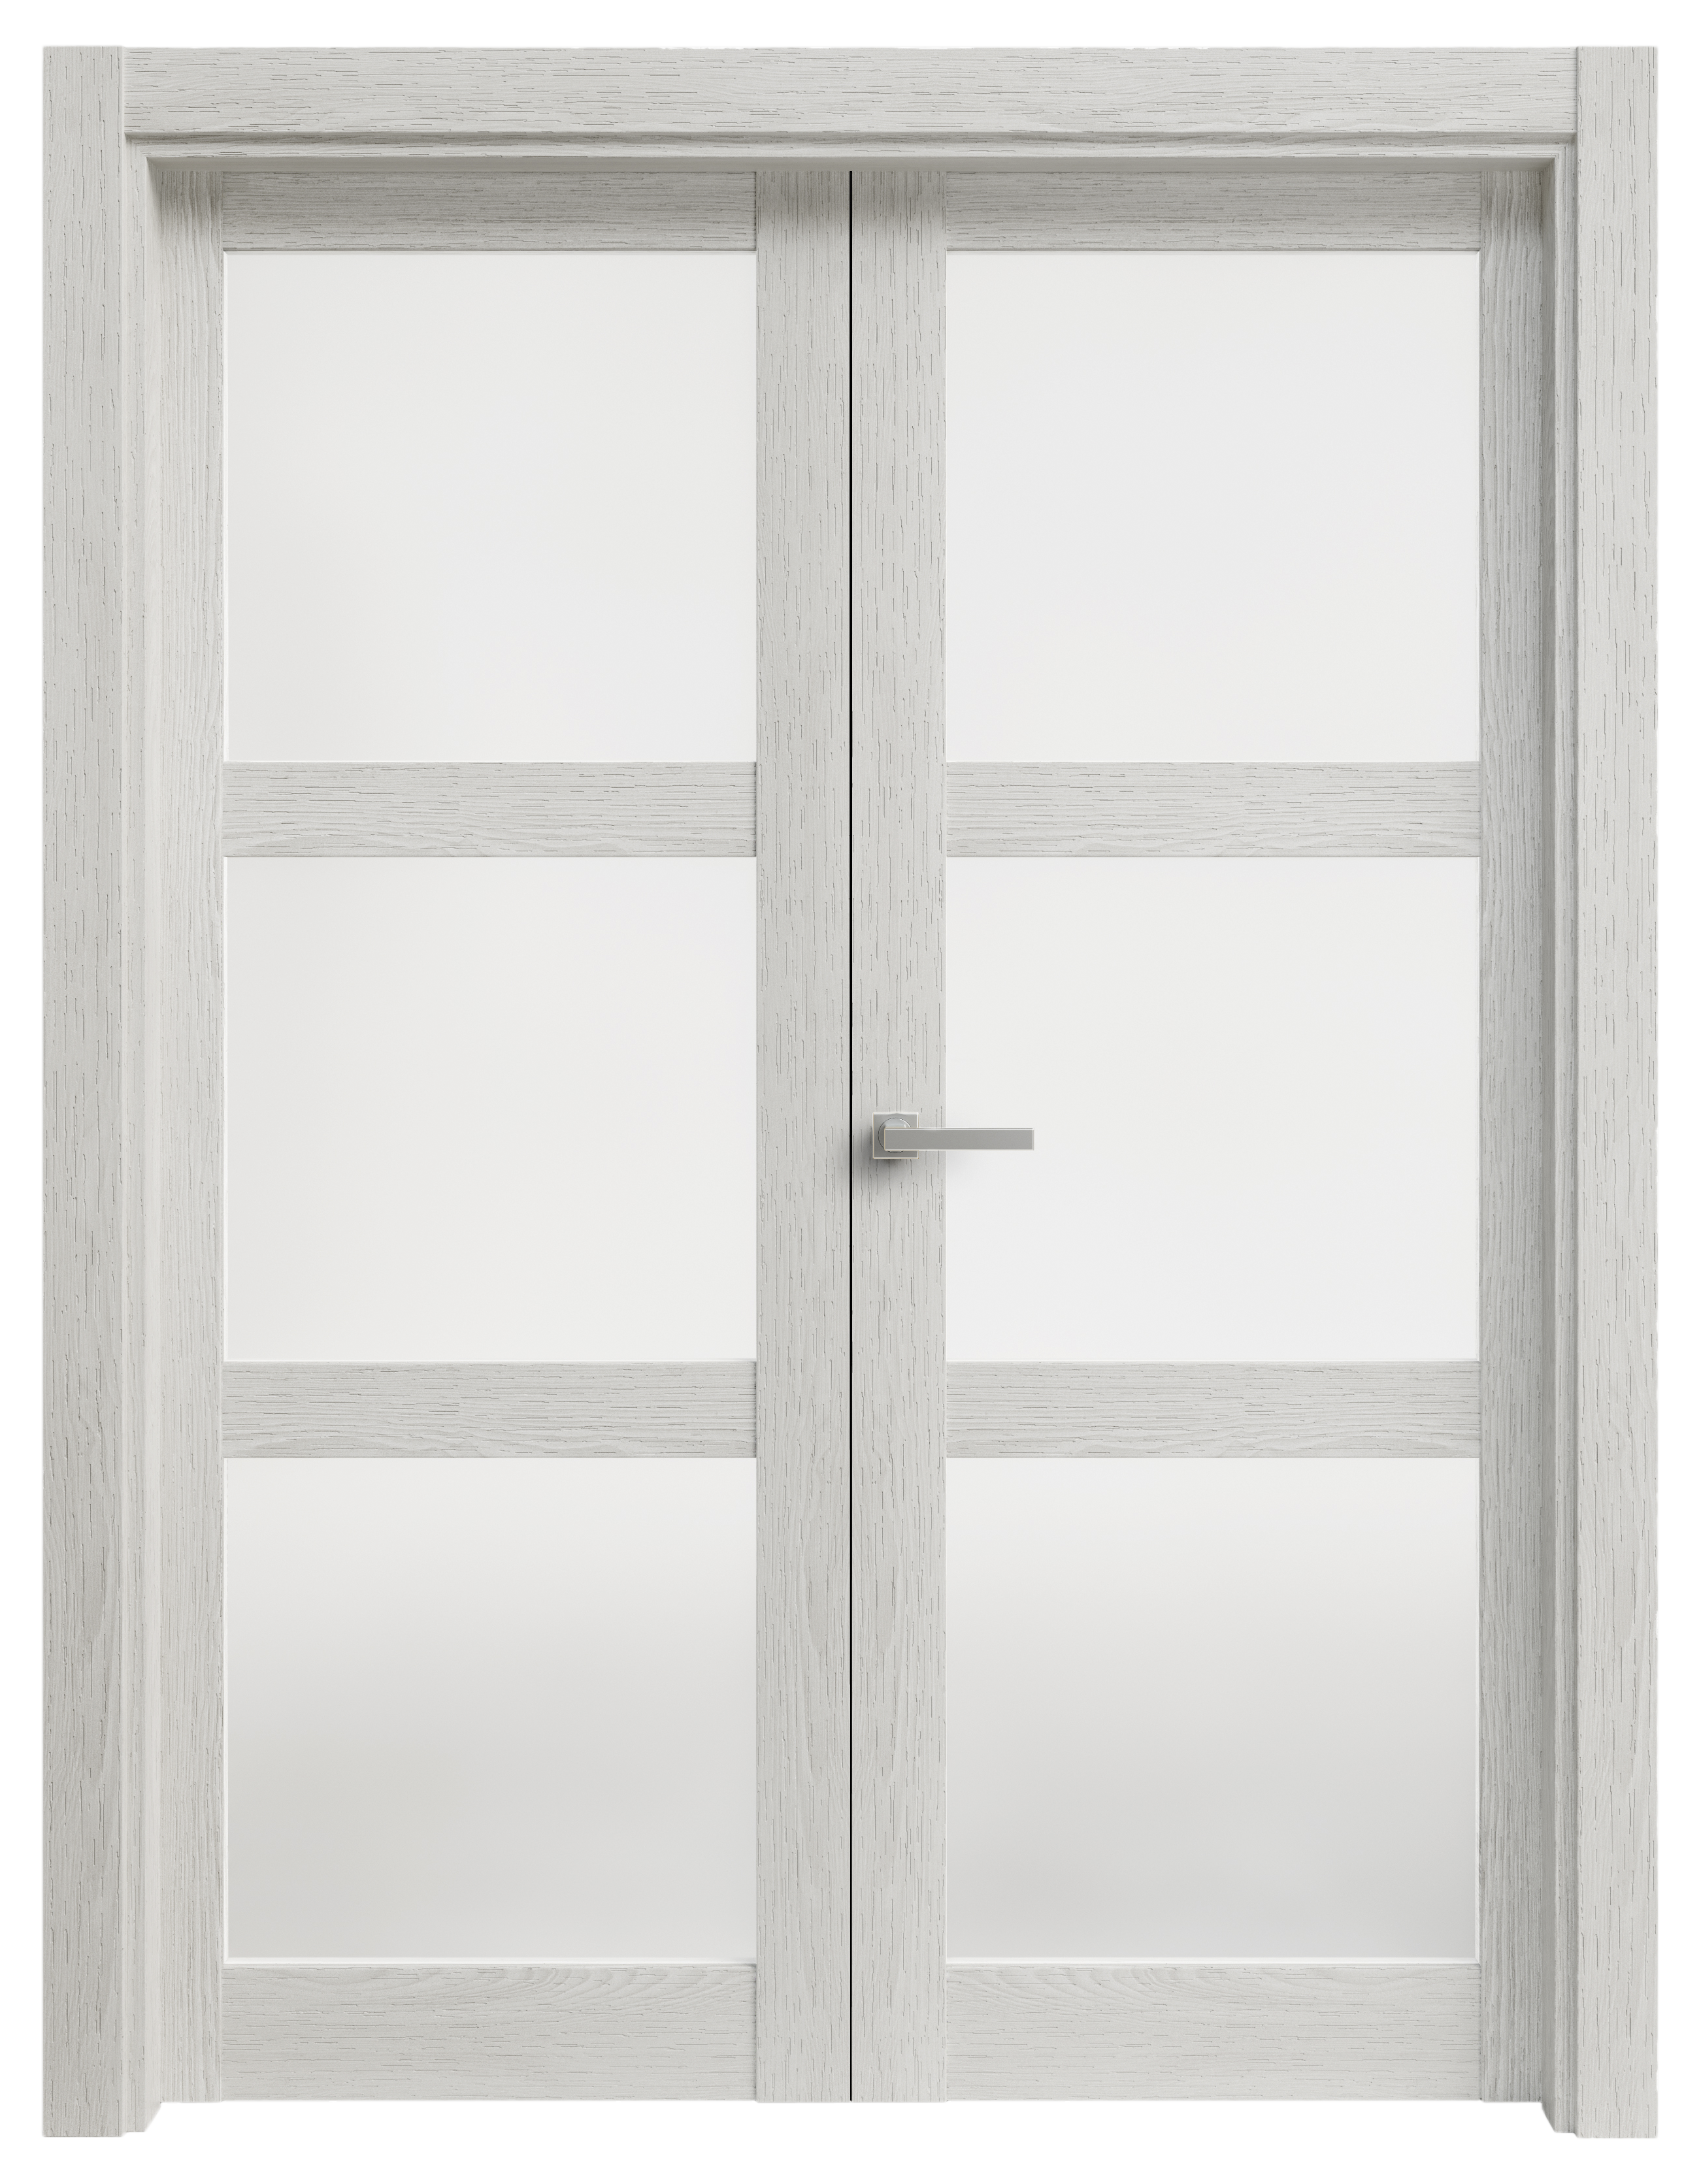 Puerta abatible moscu blanca line plus con cristal blanco izquierda de 115 c